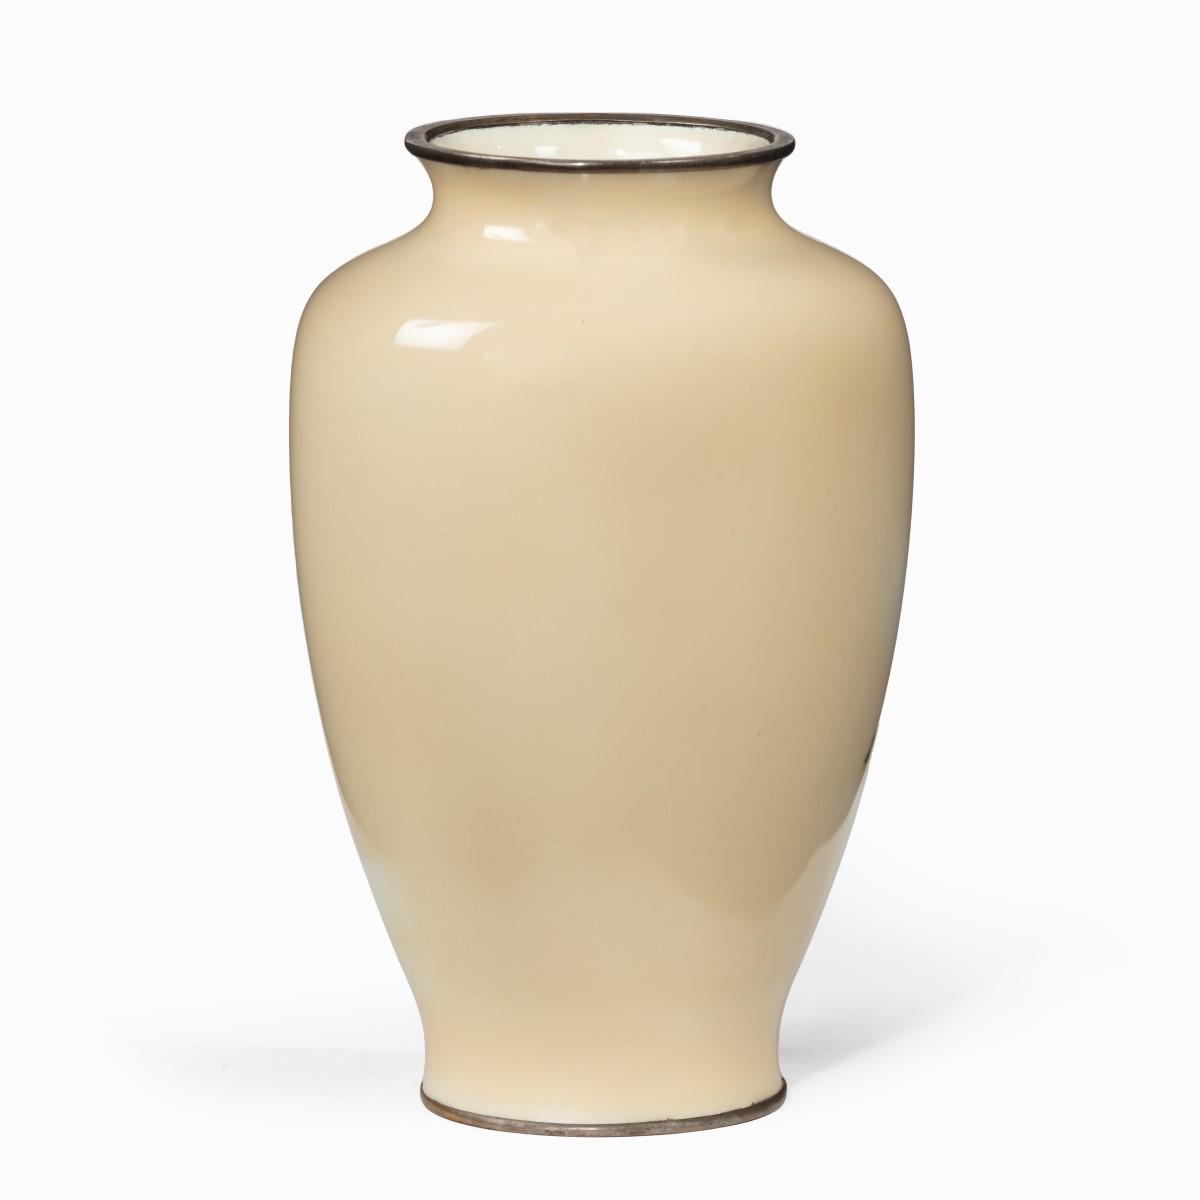 Showa period rich cream ground musen cloisonne enamel vase